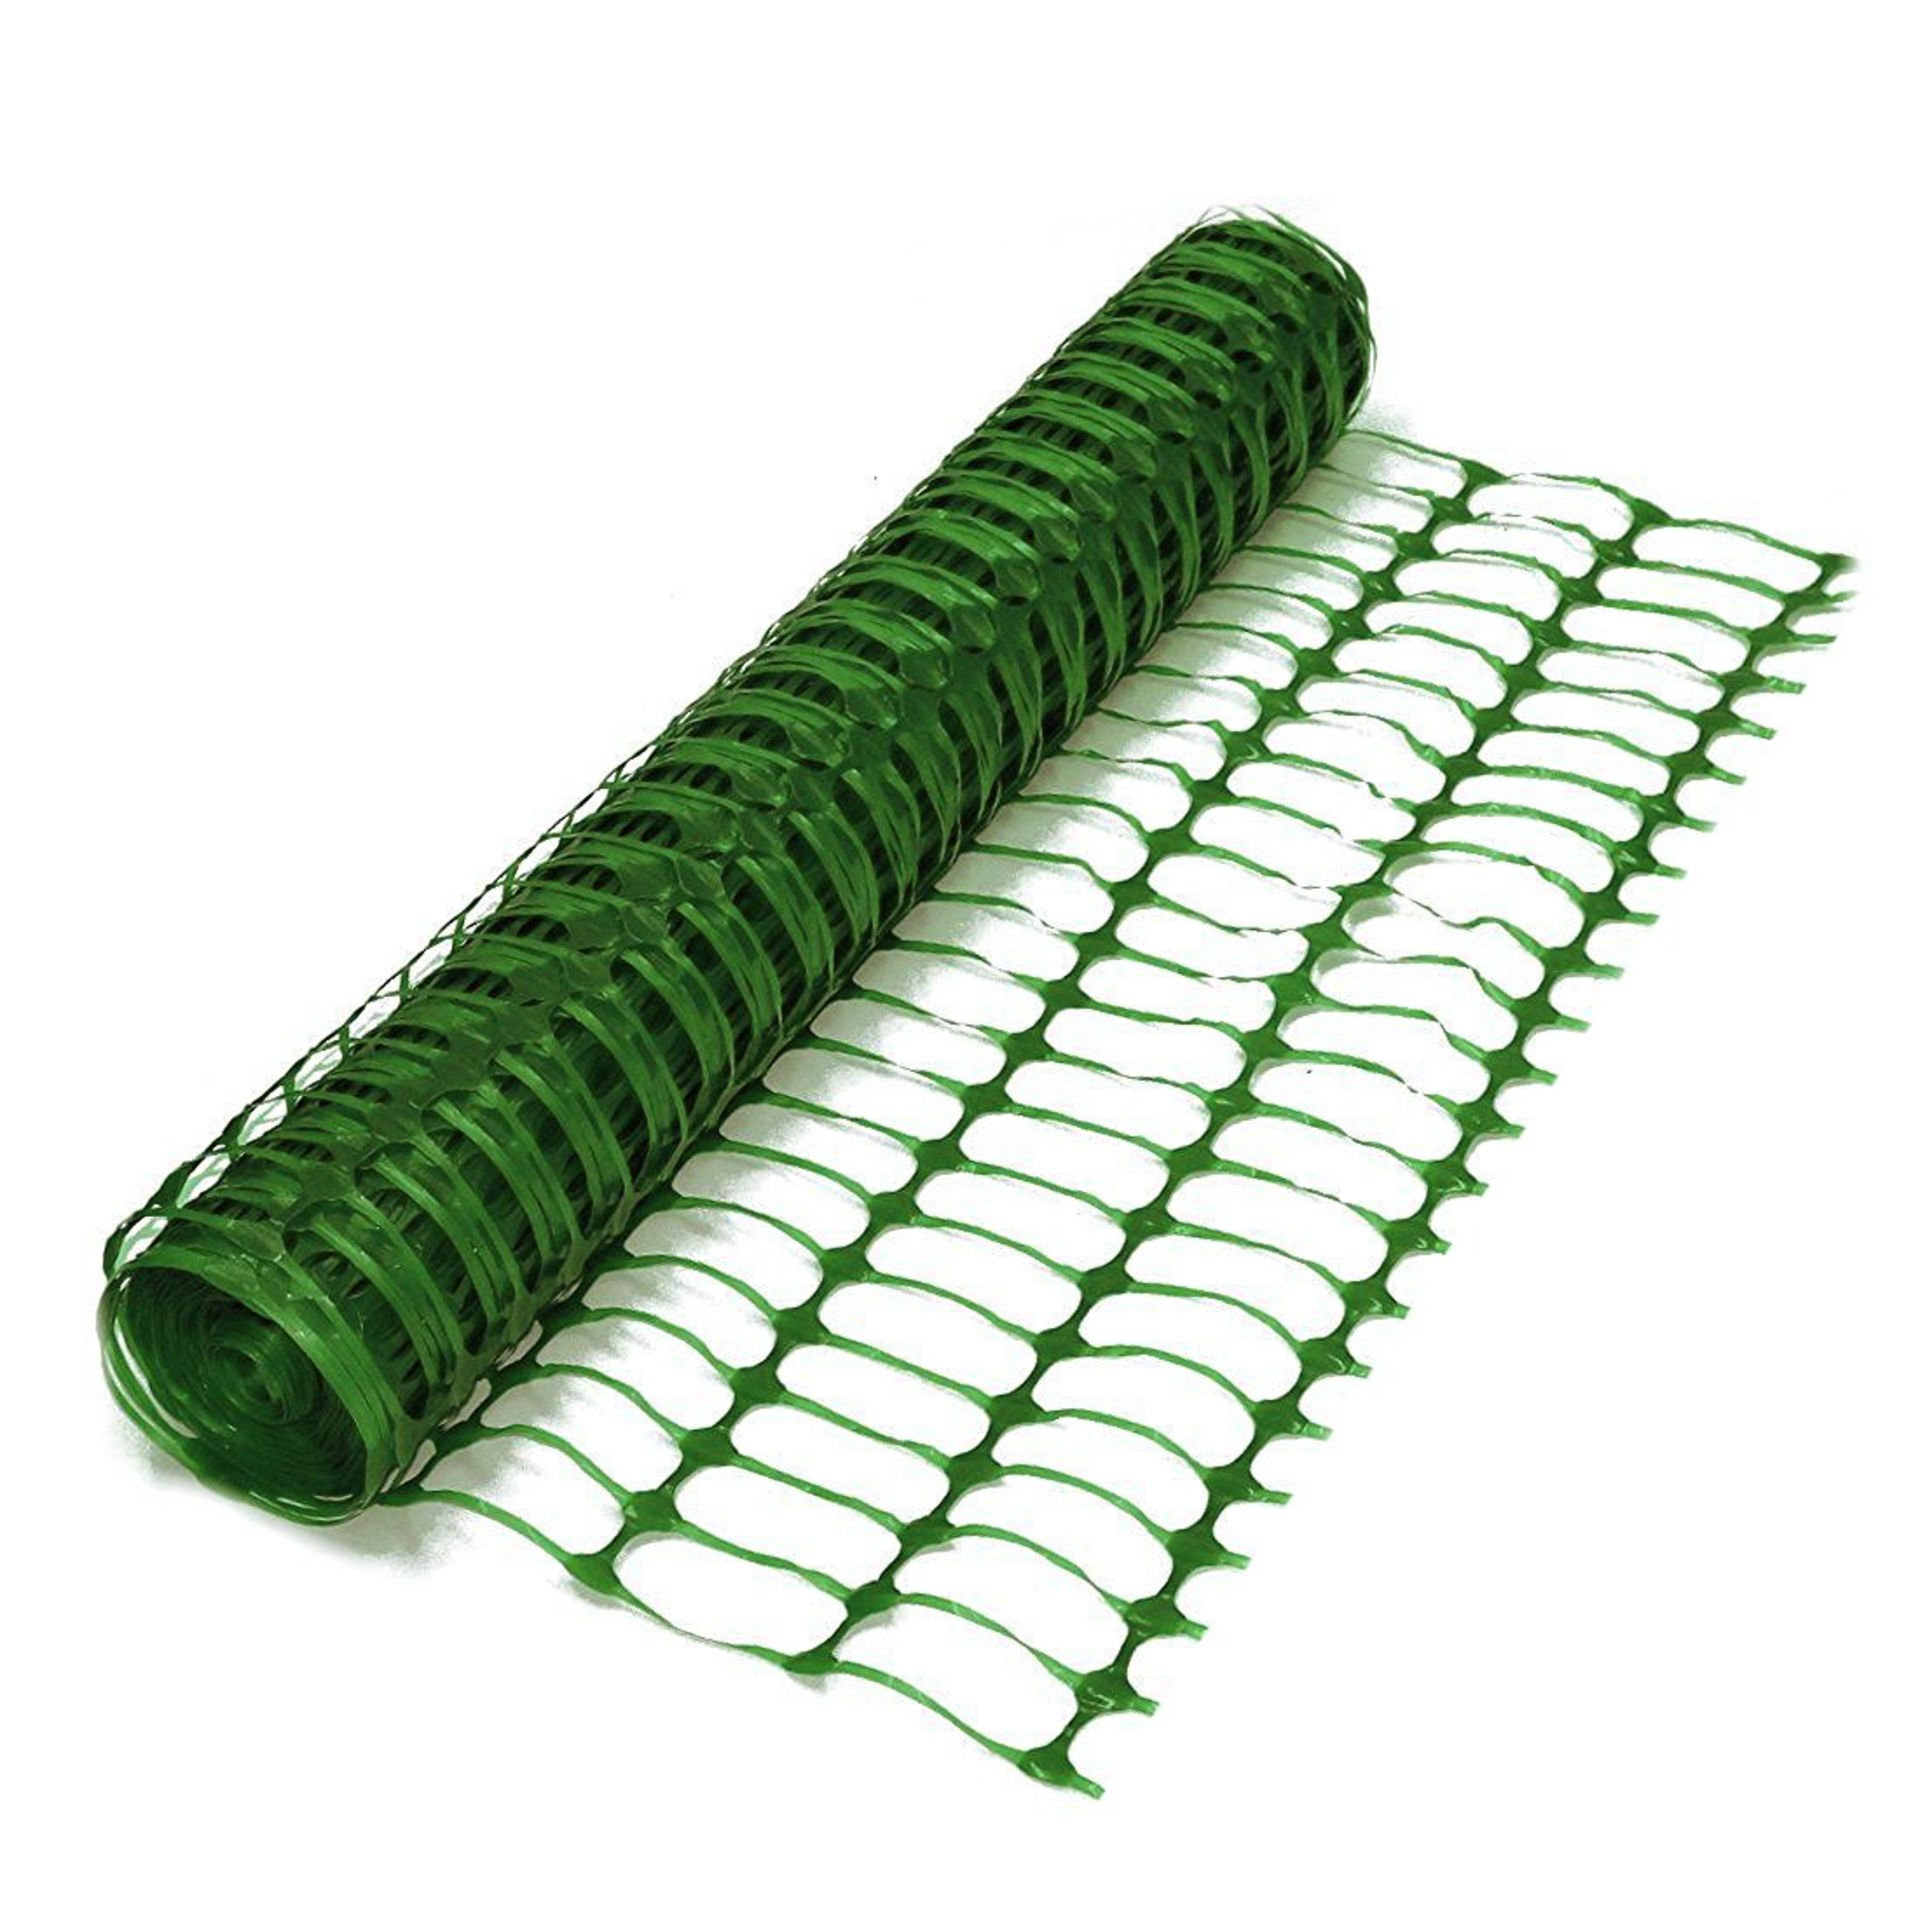 (LF149) Heavy Duty Green Safety Barrier Mesh Fencing 1mtr x 25mtr Roll Dimensions 1m x 25m Du...